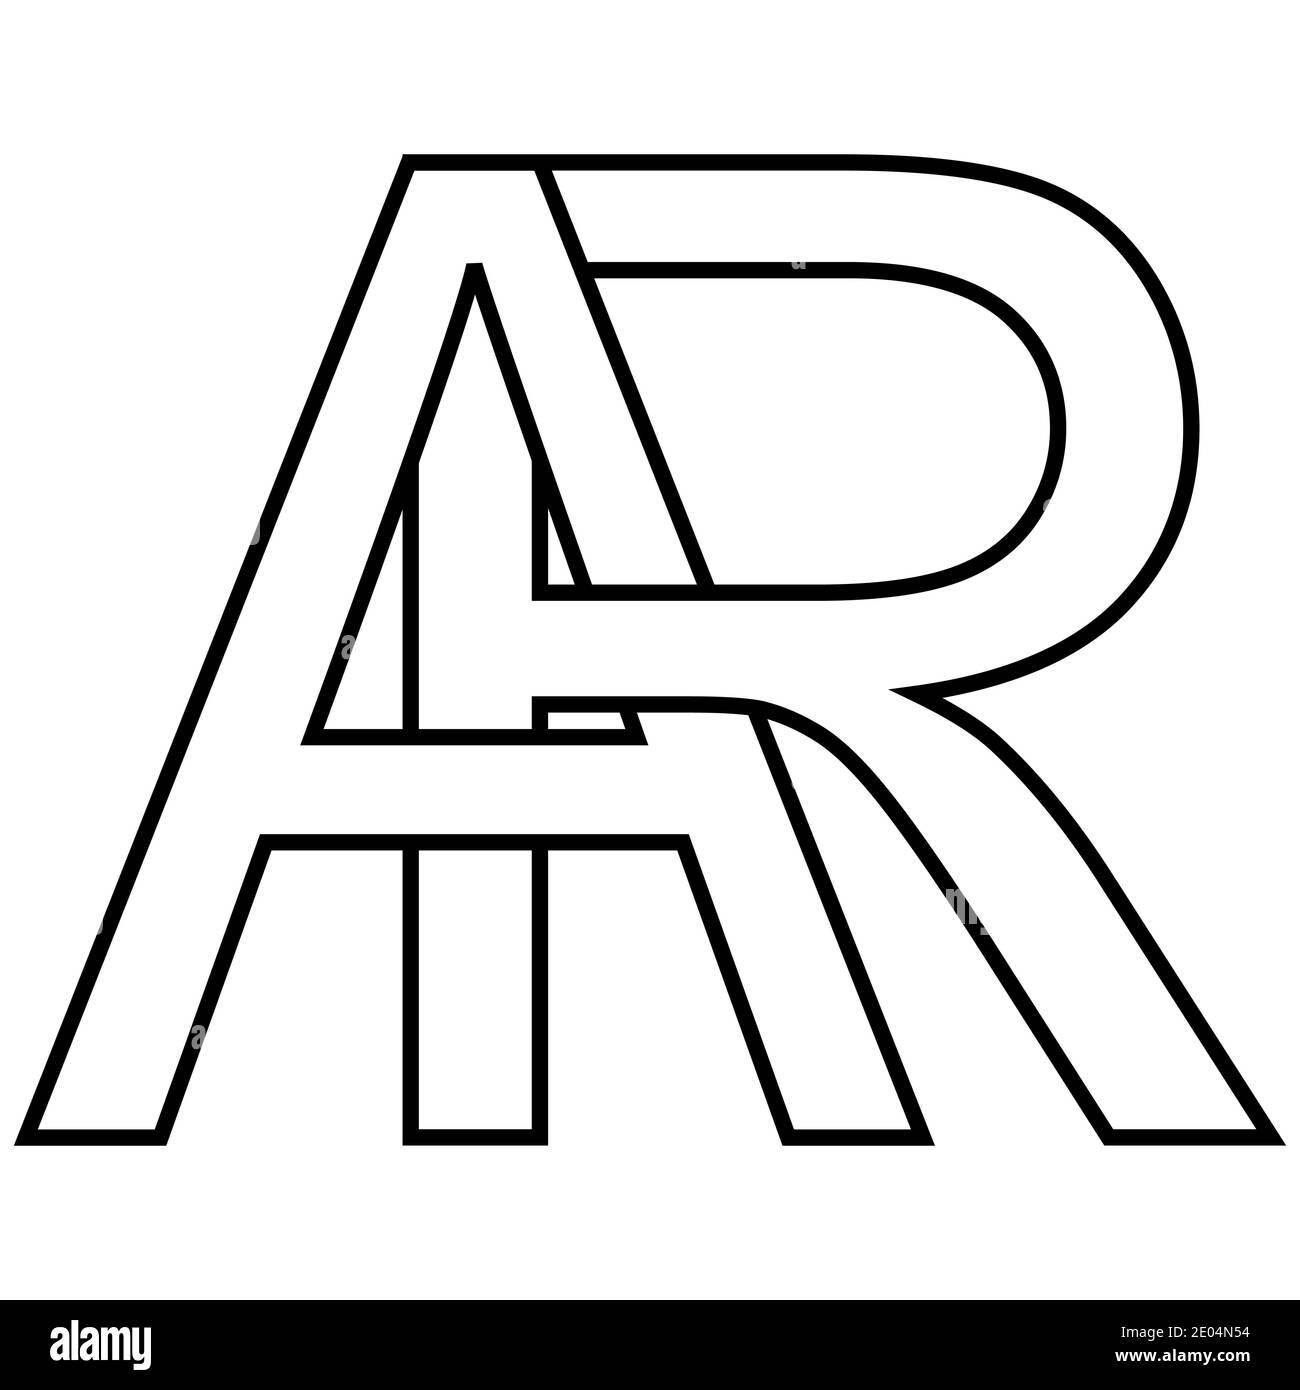 Logo Zeichen ar, ra Symbol Zeichen interlaced Buchstaben A, R Vektor Logo ar, ra erste Großbuchstaben Muster Alphabet a, r Stock Vektor